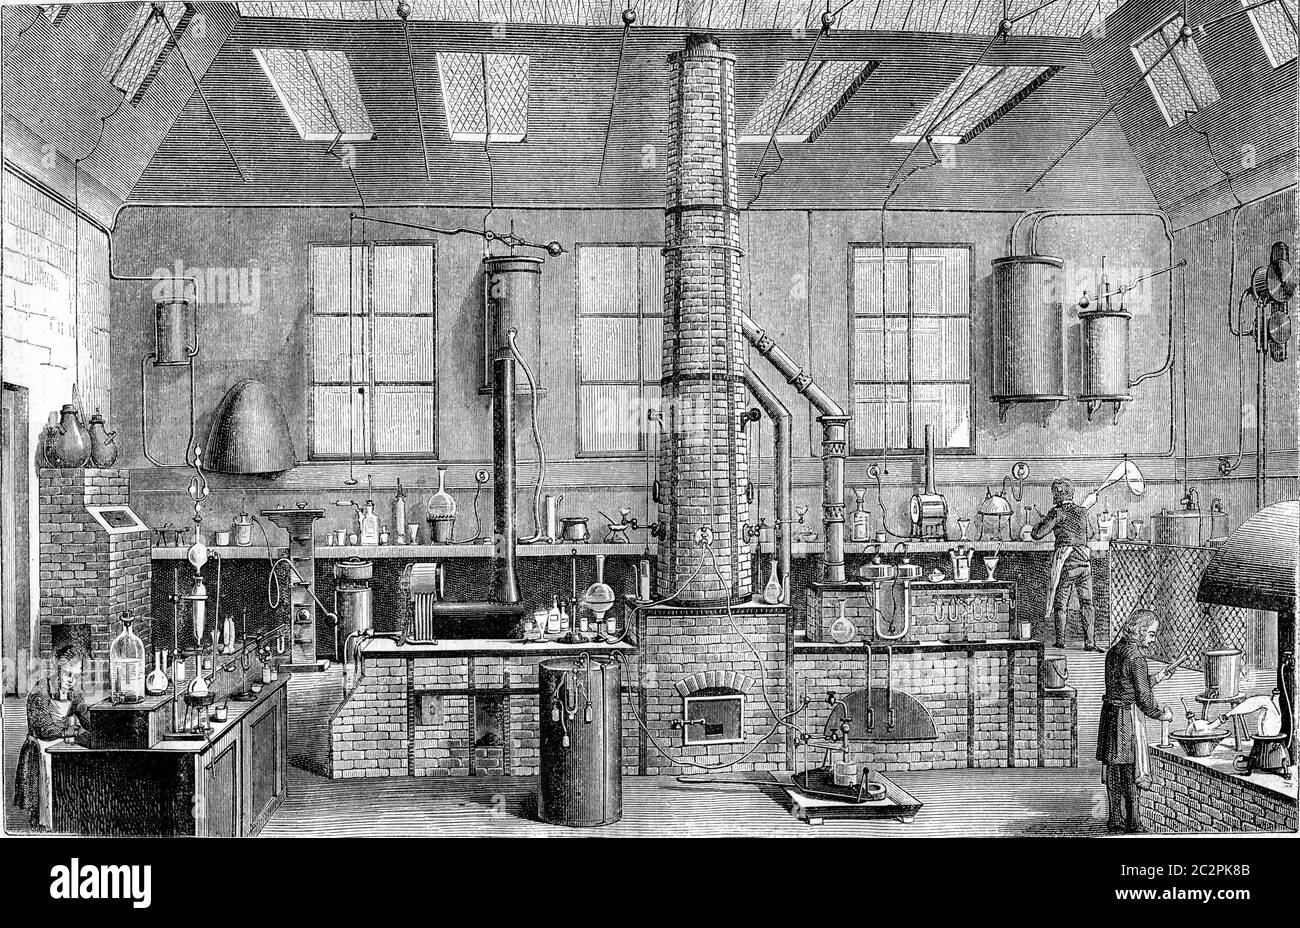 Laboratoire de chimie à l'Ecole Normale de Paris, illustration gravée d'époque. Magasin Pittoresque 1870. Banque D'Images